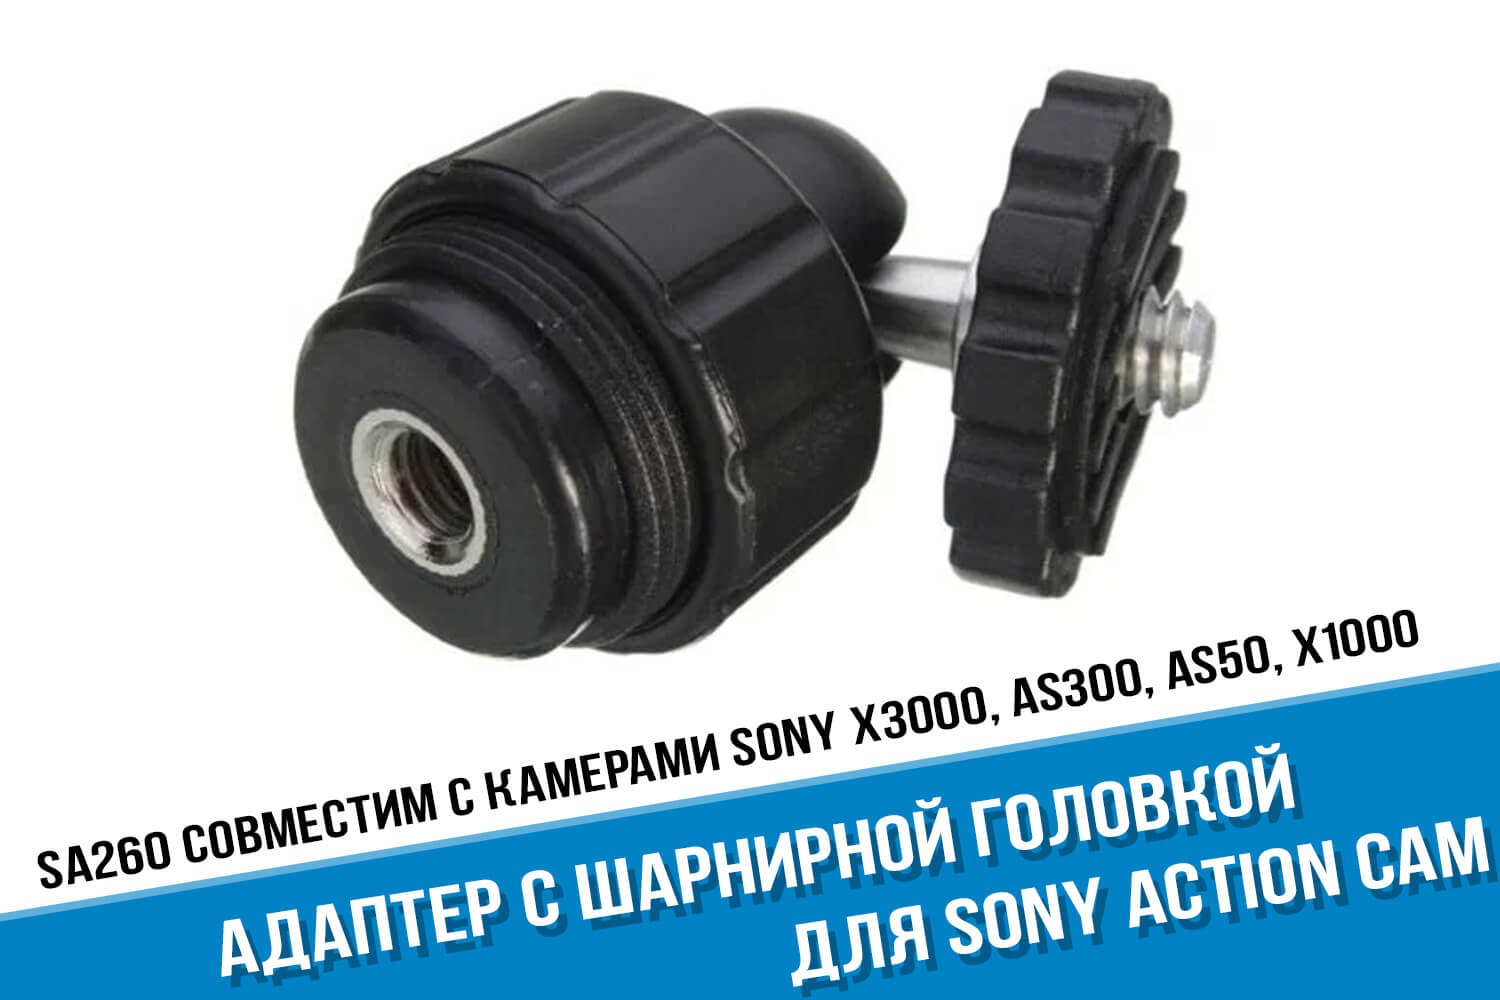 Адаптер с шарнирной головкой для Sony Action Cam